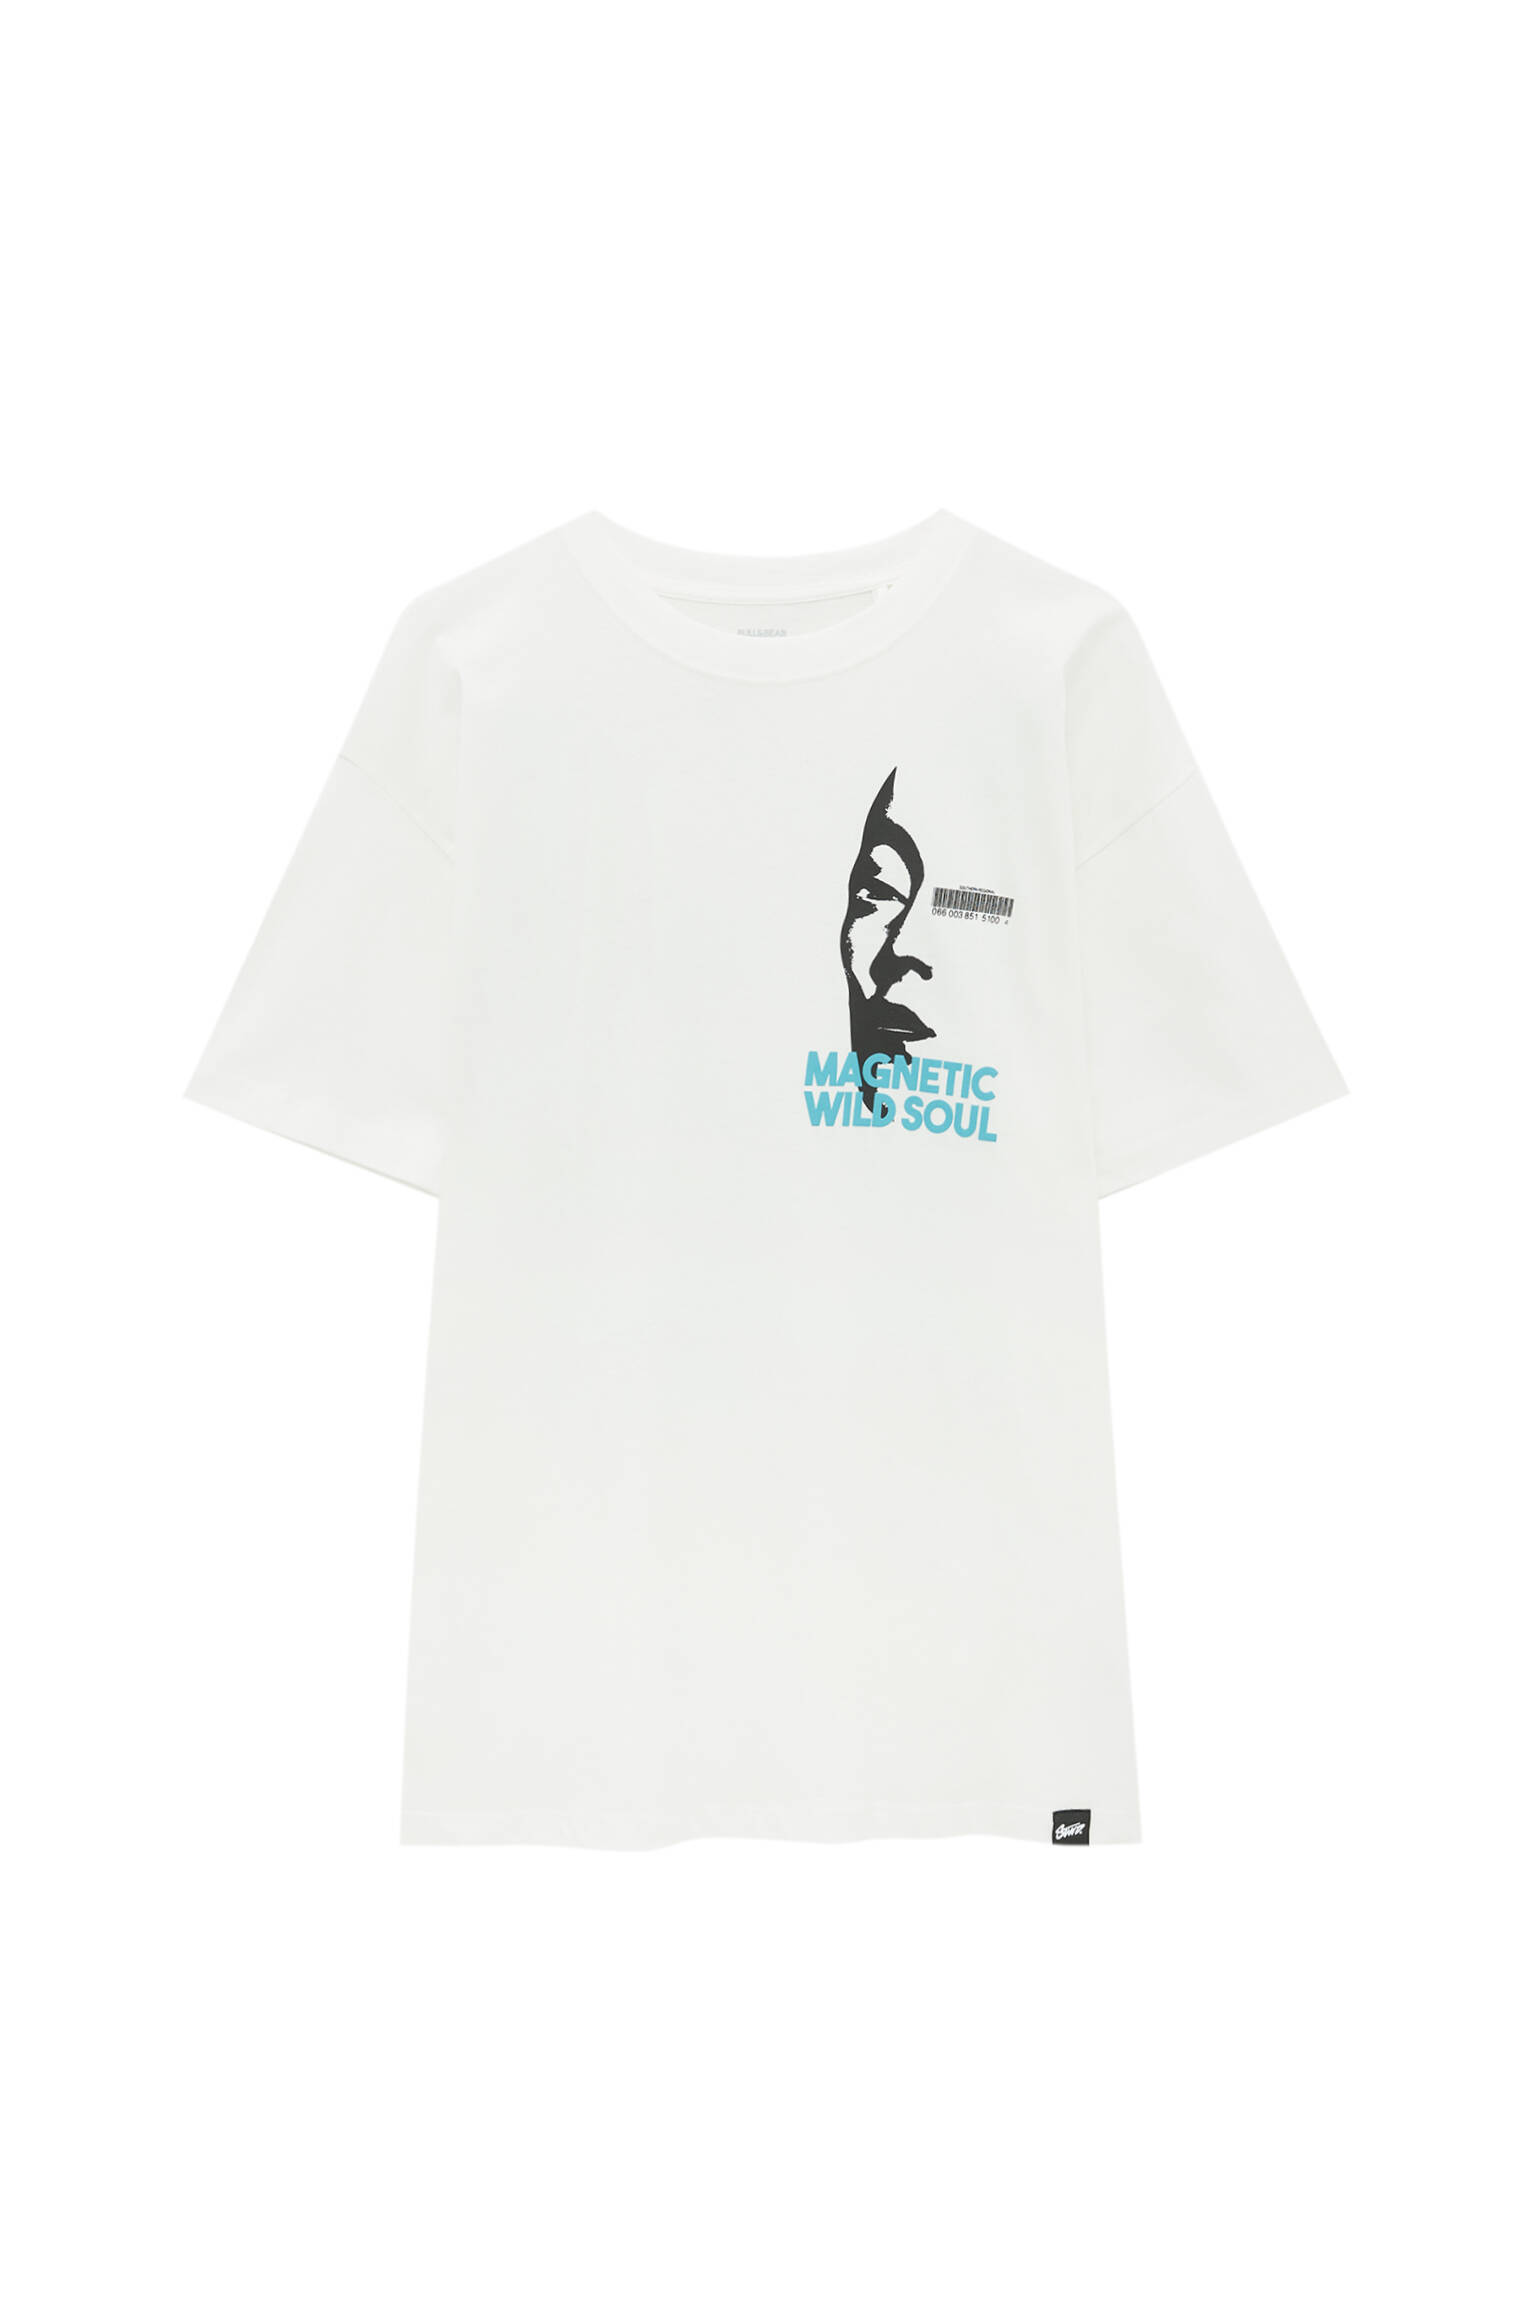 Pull&bear Homme T-shirt Blanc En Coton, à Manches Courtes Et Col Rond, Avec Illustration Et Inscription « magnetic Wild Soul ». Blanc Xl